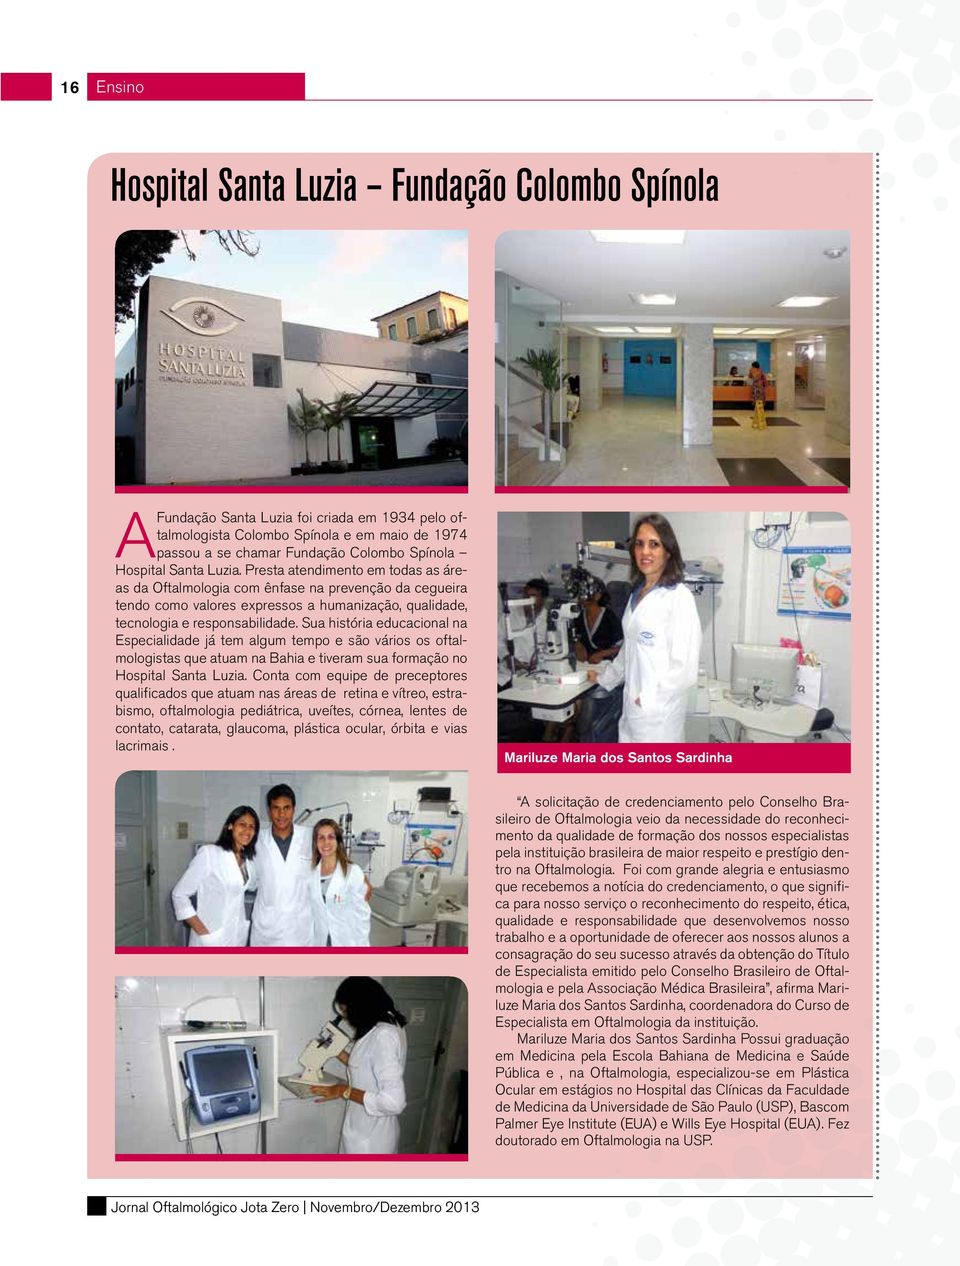 Sua história educacional na Especialidade já tem algum tempo e são vários os oftalmologistas que atuam na Bahia e tiveram sua formação no Hospital Santa Luzia.